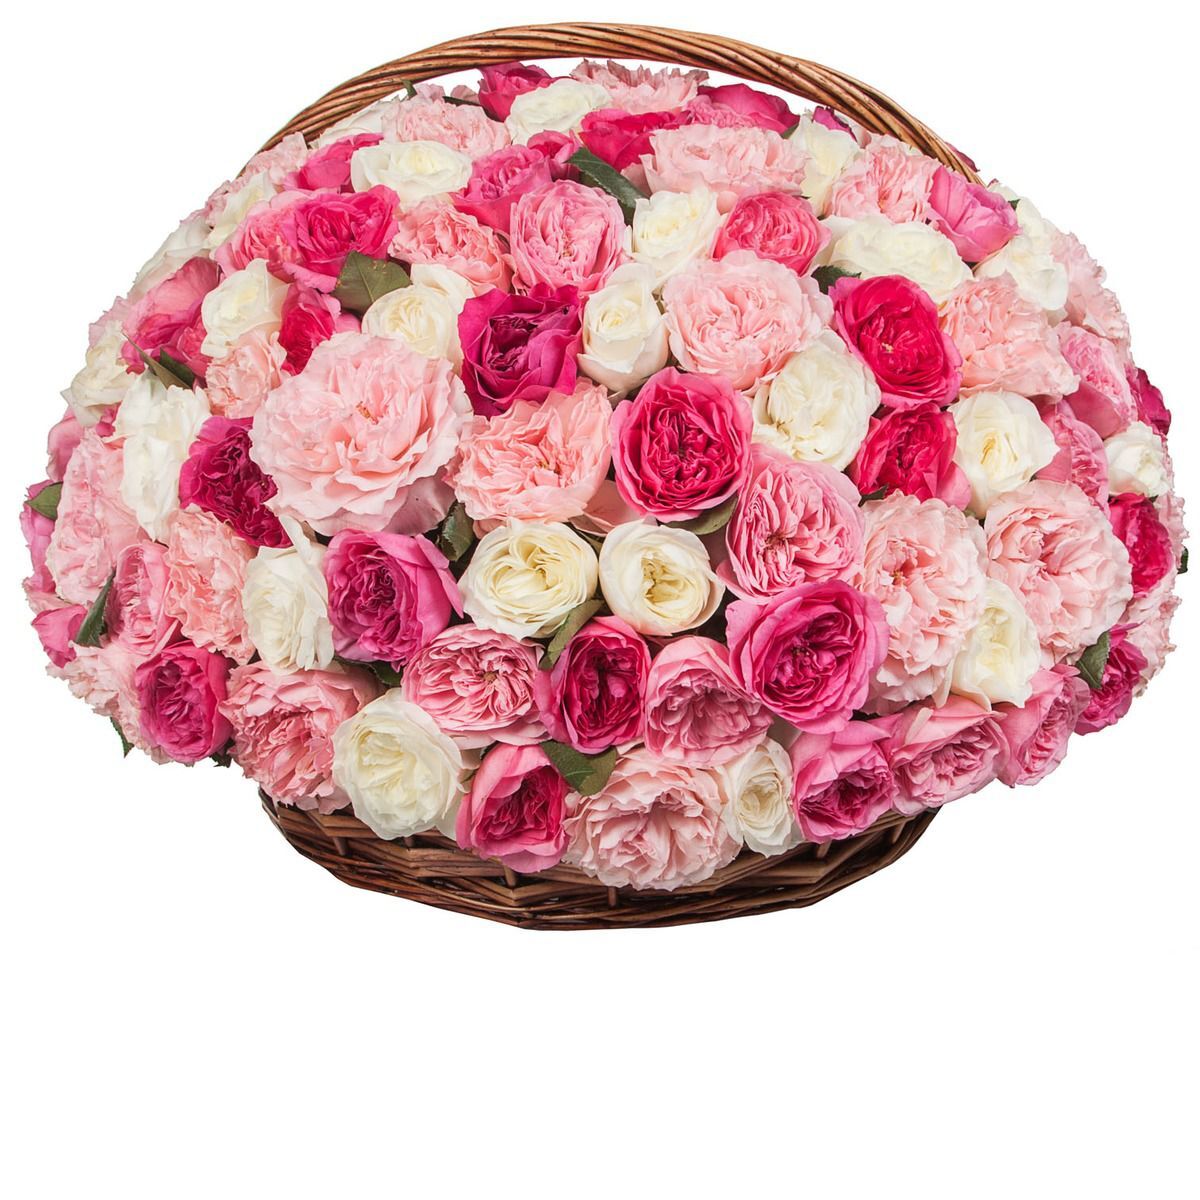 Купить розы в новосибирске недорого. Корзина пионовидных роз. Большие букеты цветов.